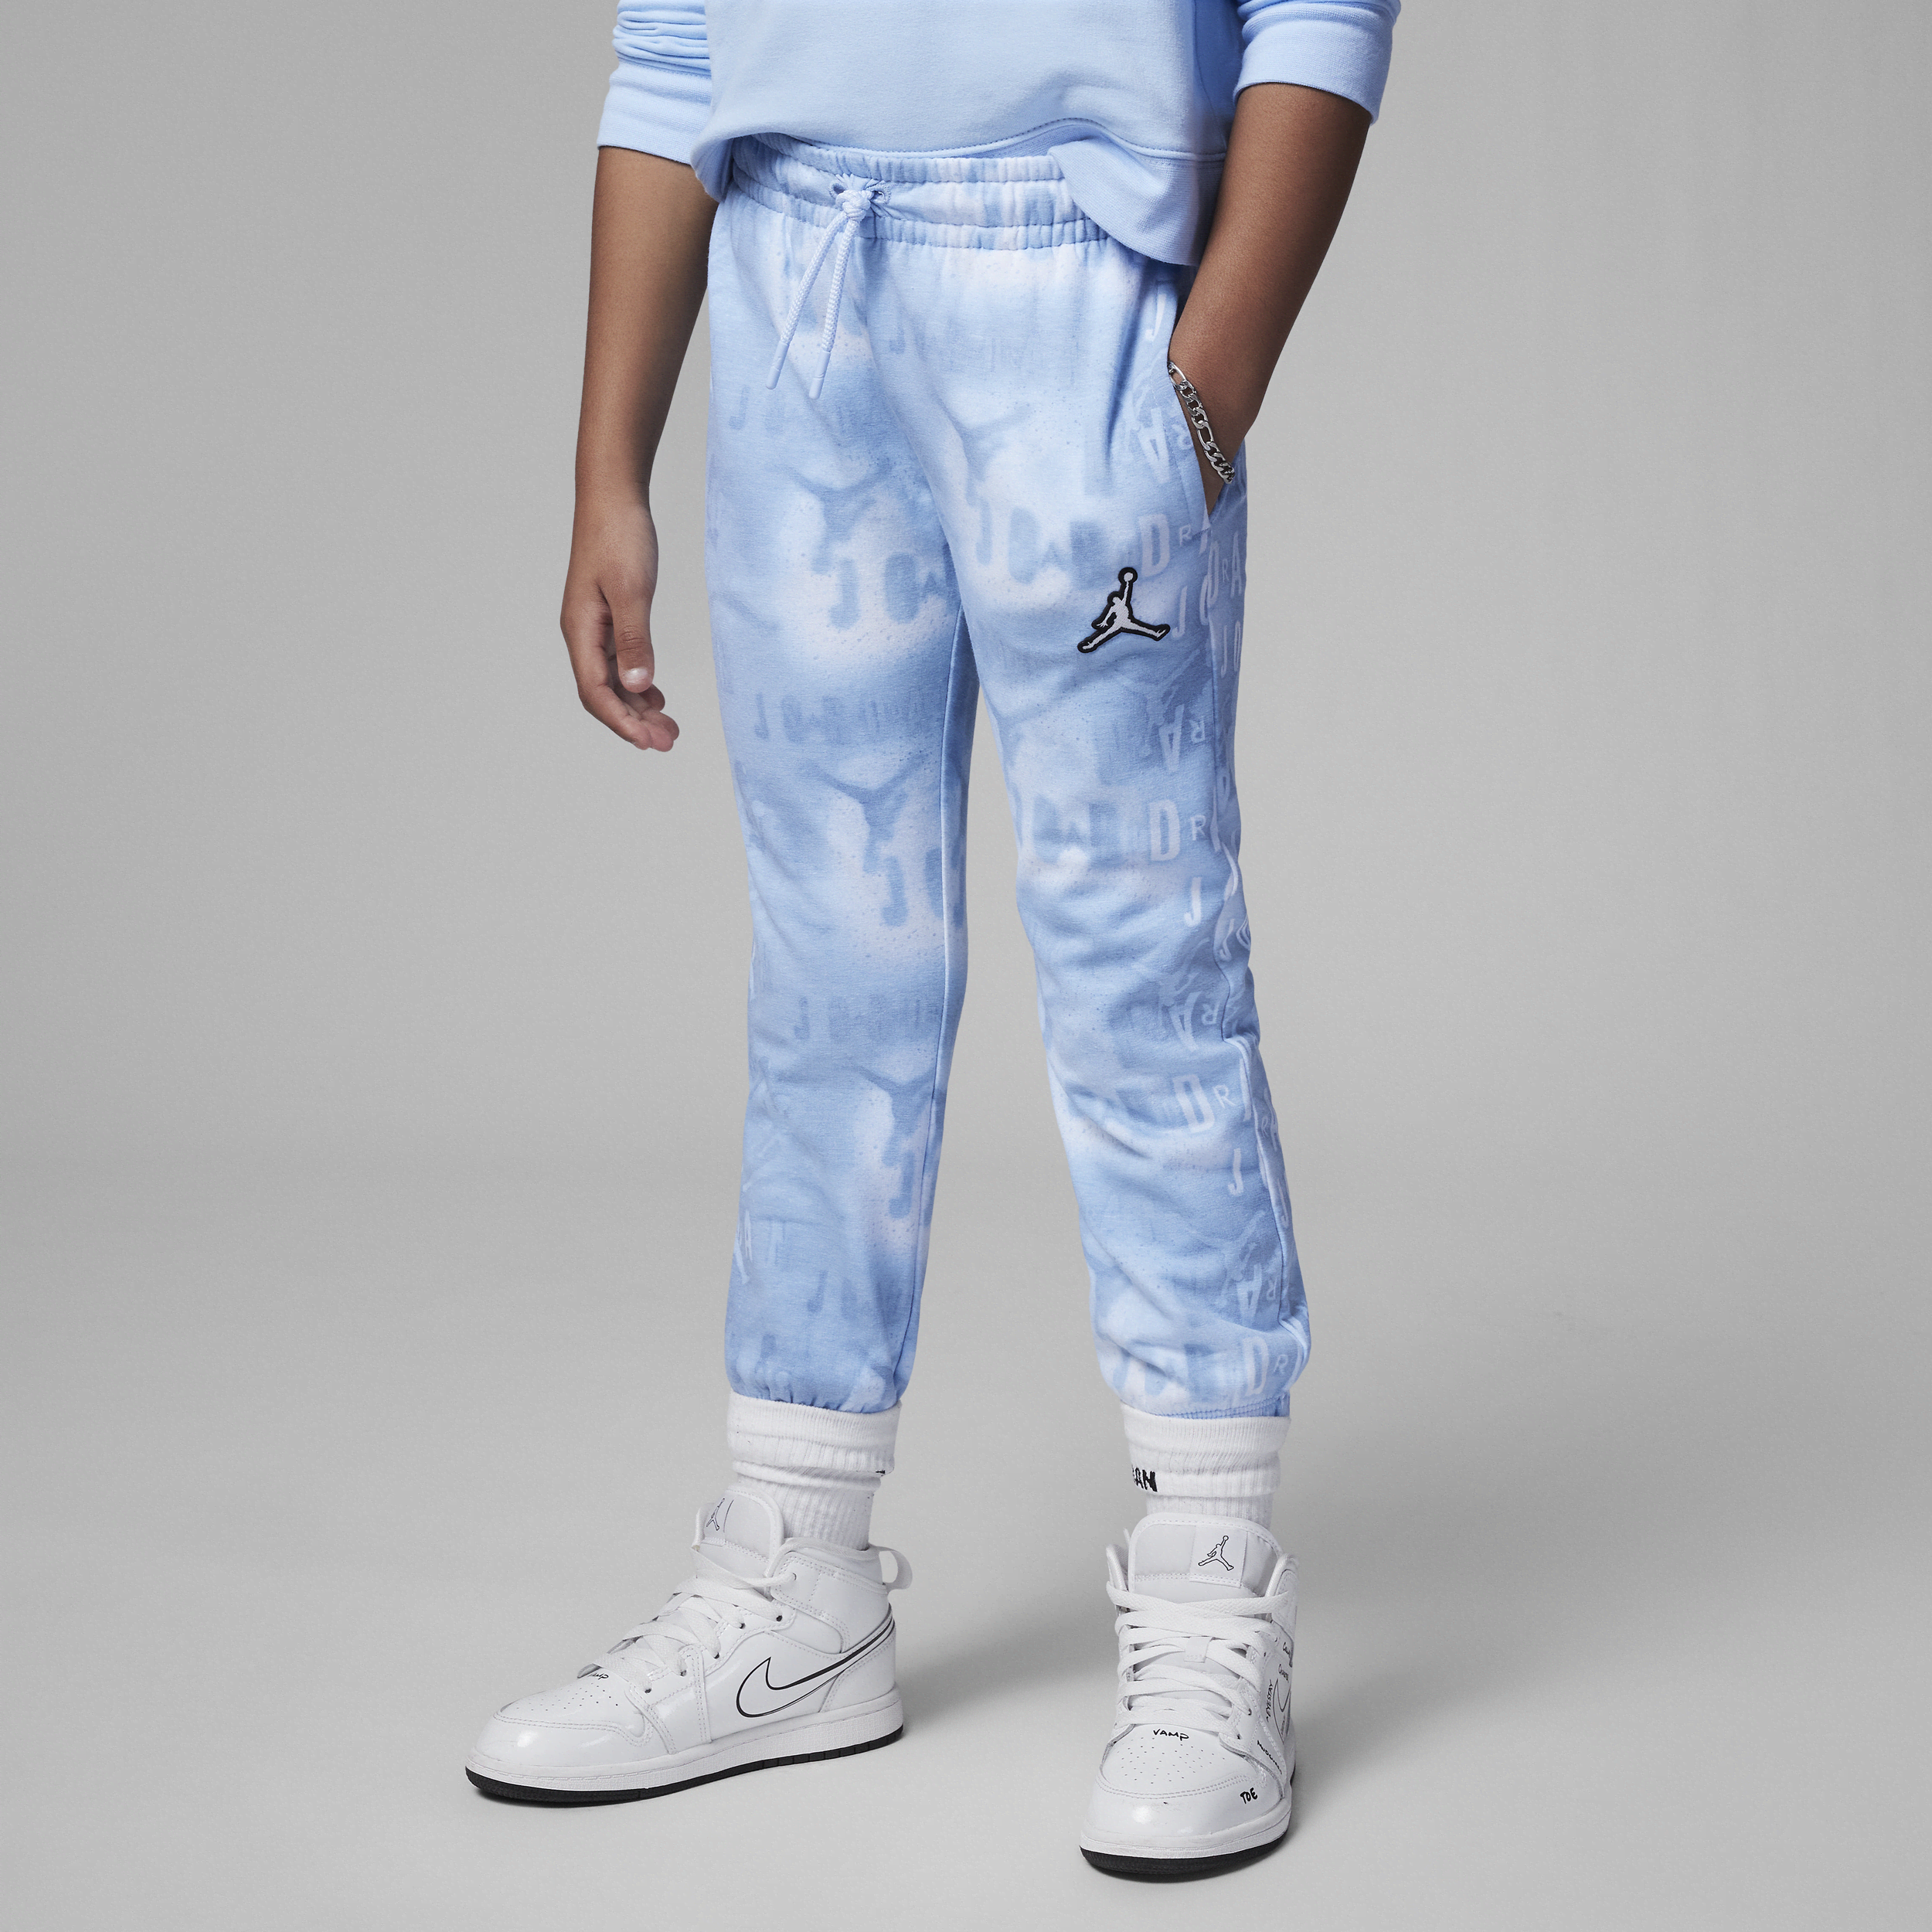 Jordan Essentials Printed Pants Little Kids' Pants In Blue